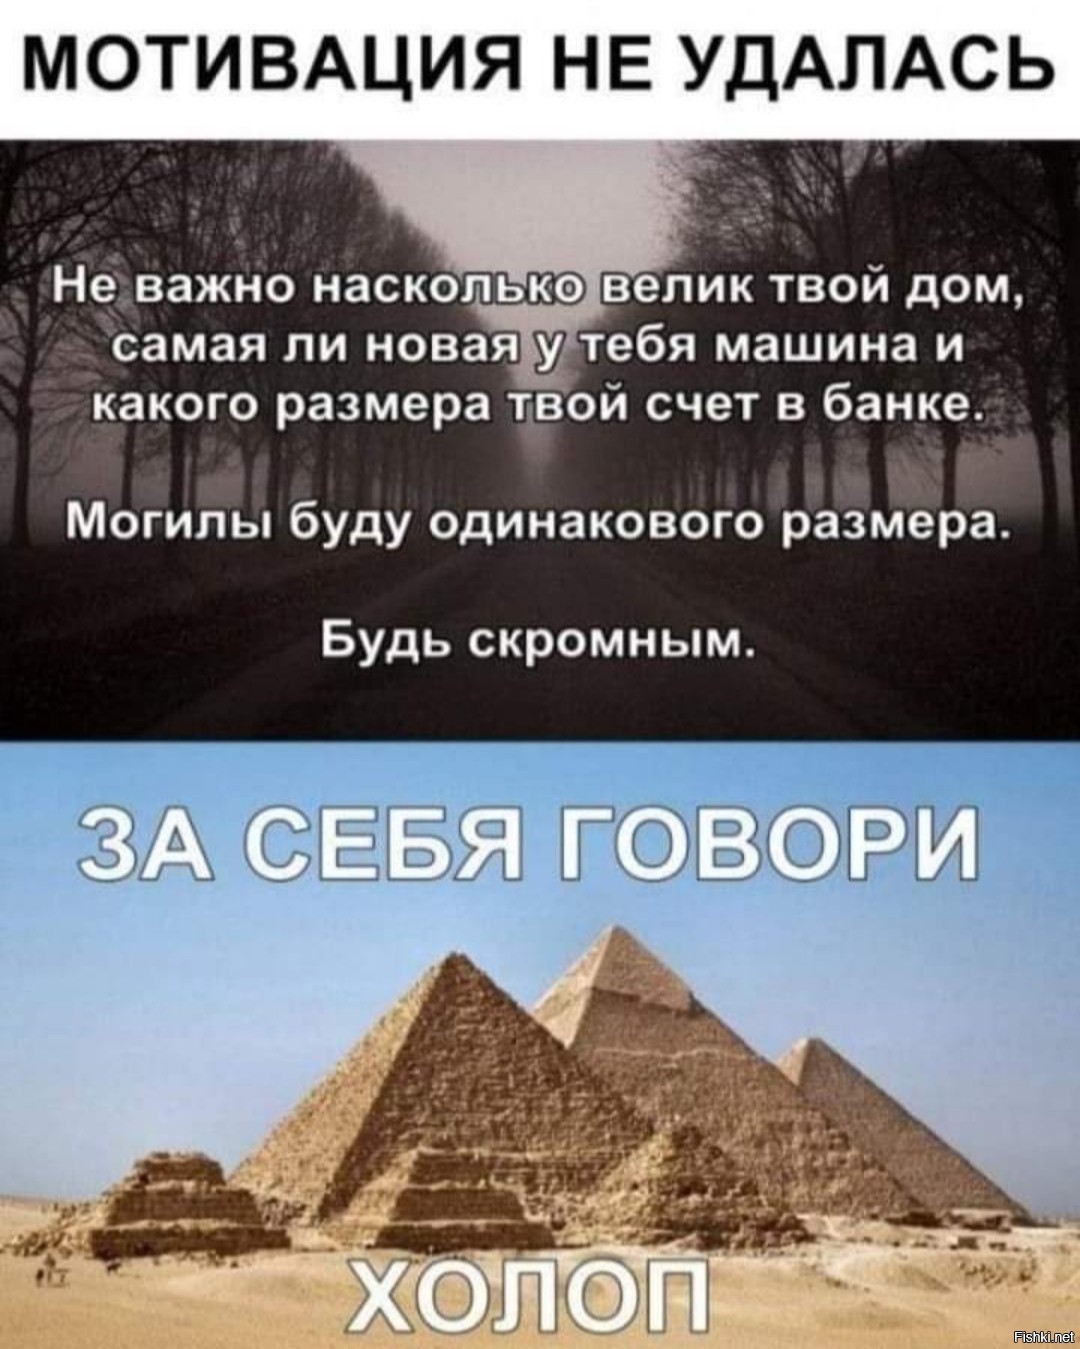 Насколько широко. Пирамиды в Египте 2022. Пирамиды в повседневной жизни. Показ около египетских пирамид.